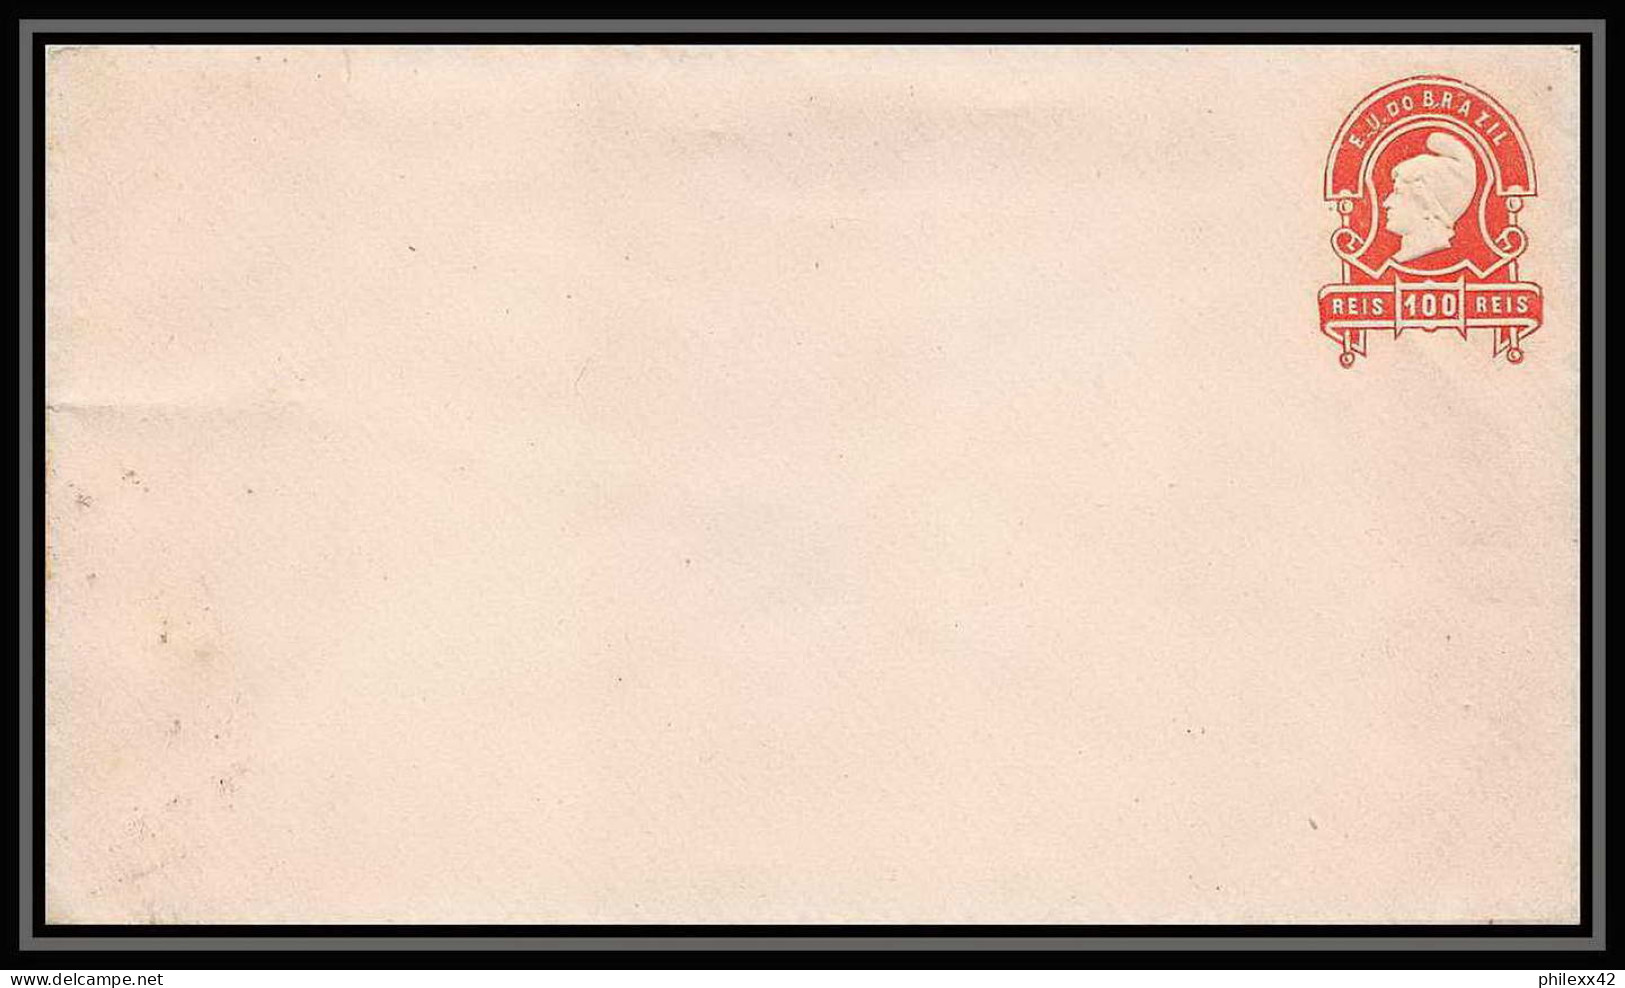 4045/ Brésil (brazil) Entier Stationery Enveloppe (cover) N°8 Neuf (mint) - Postal Stationery